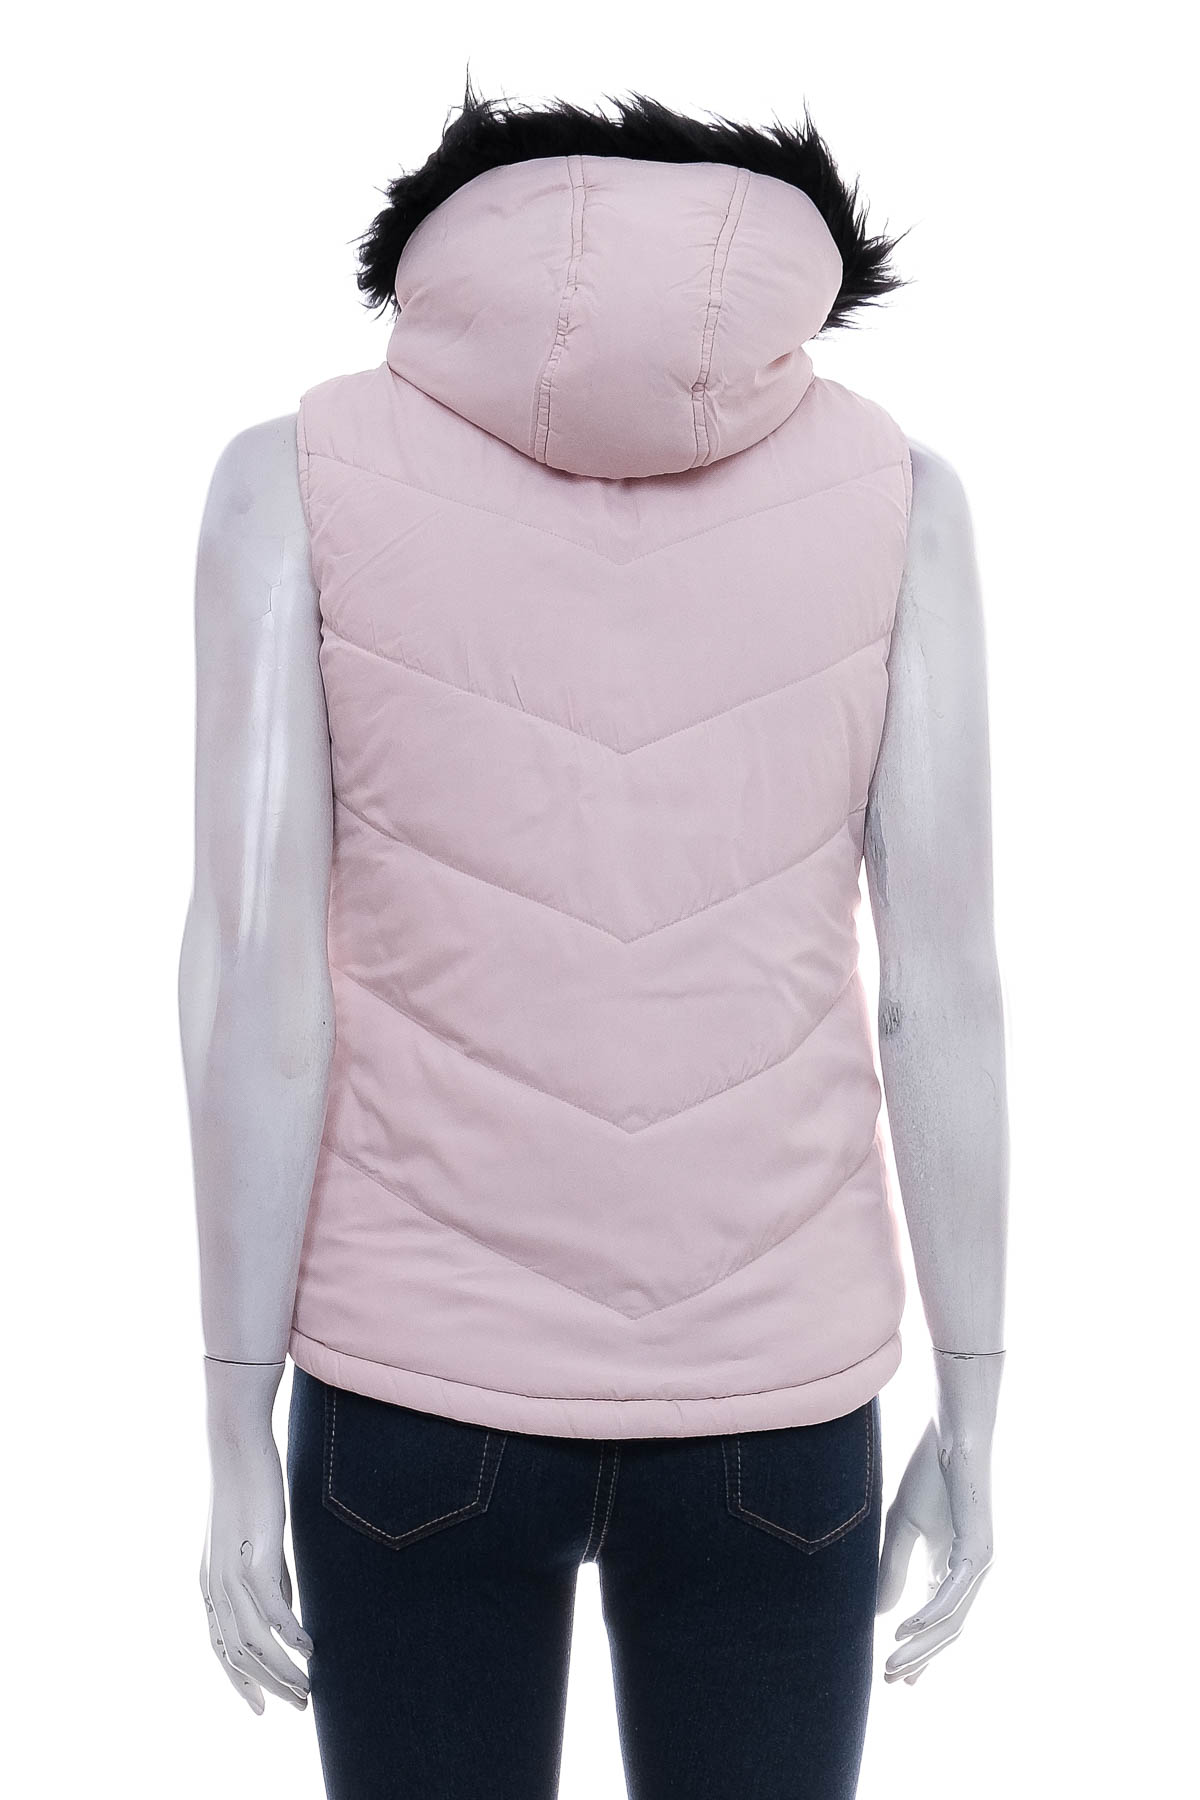 Vest for girl reversible - Target - 3